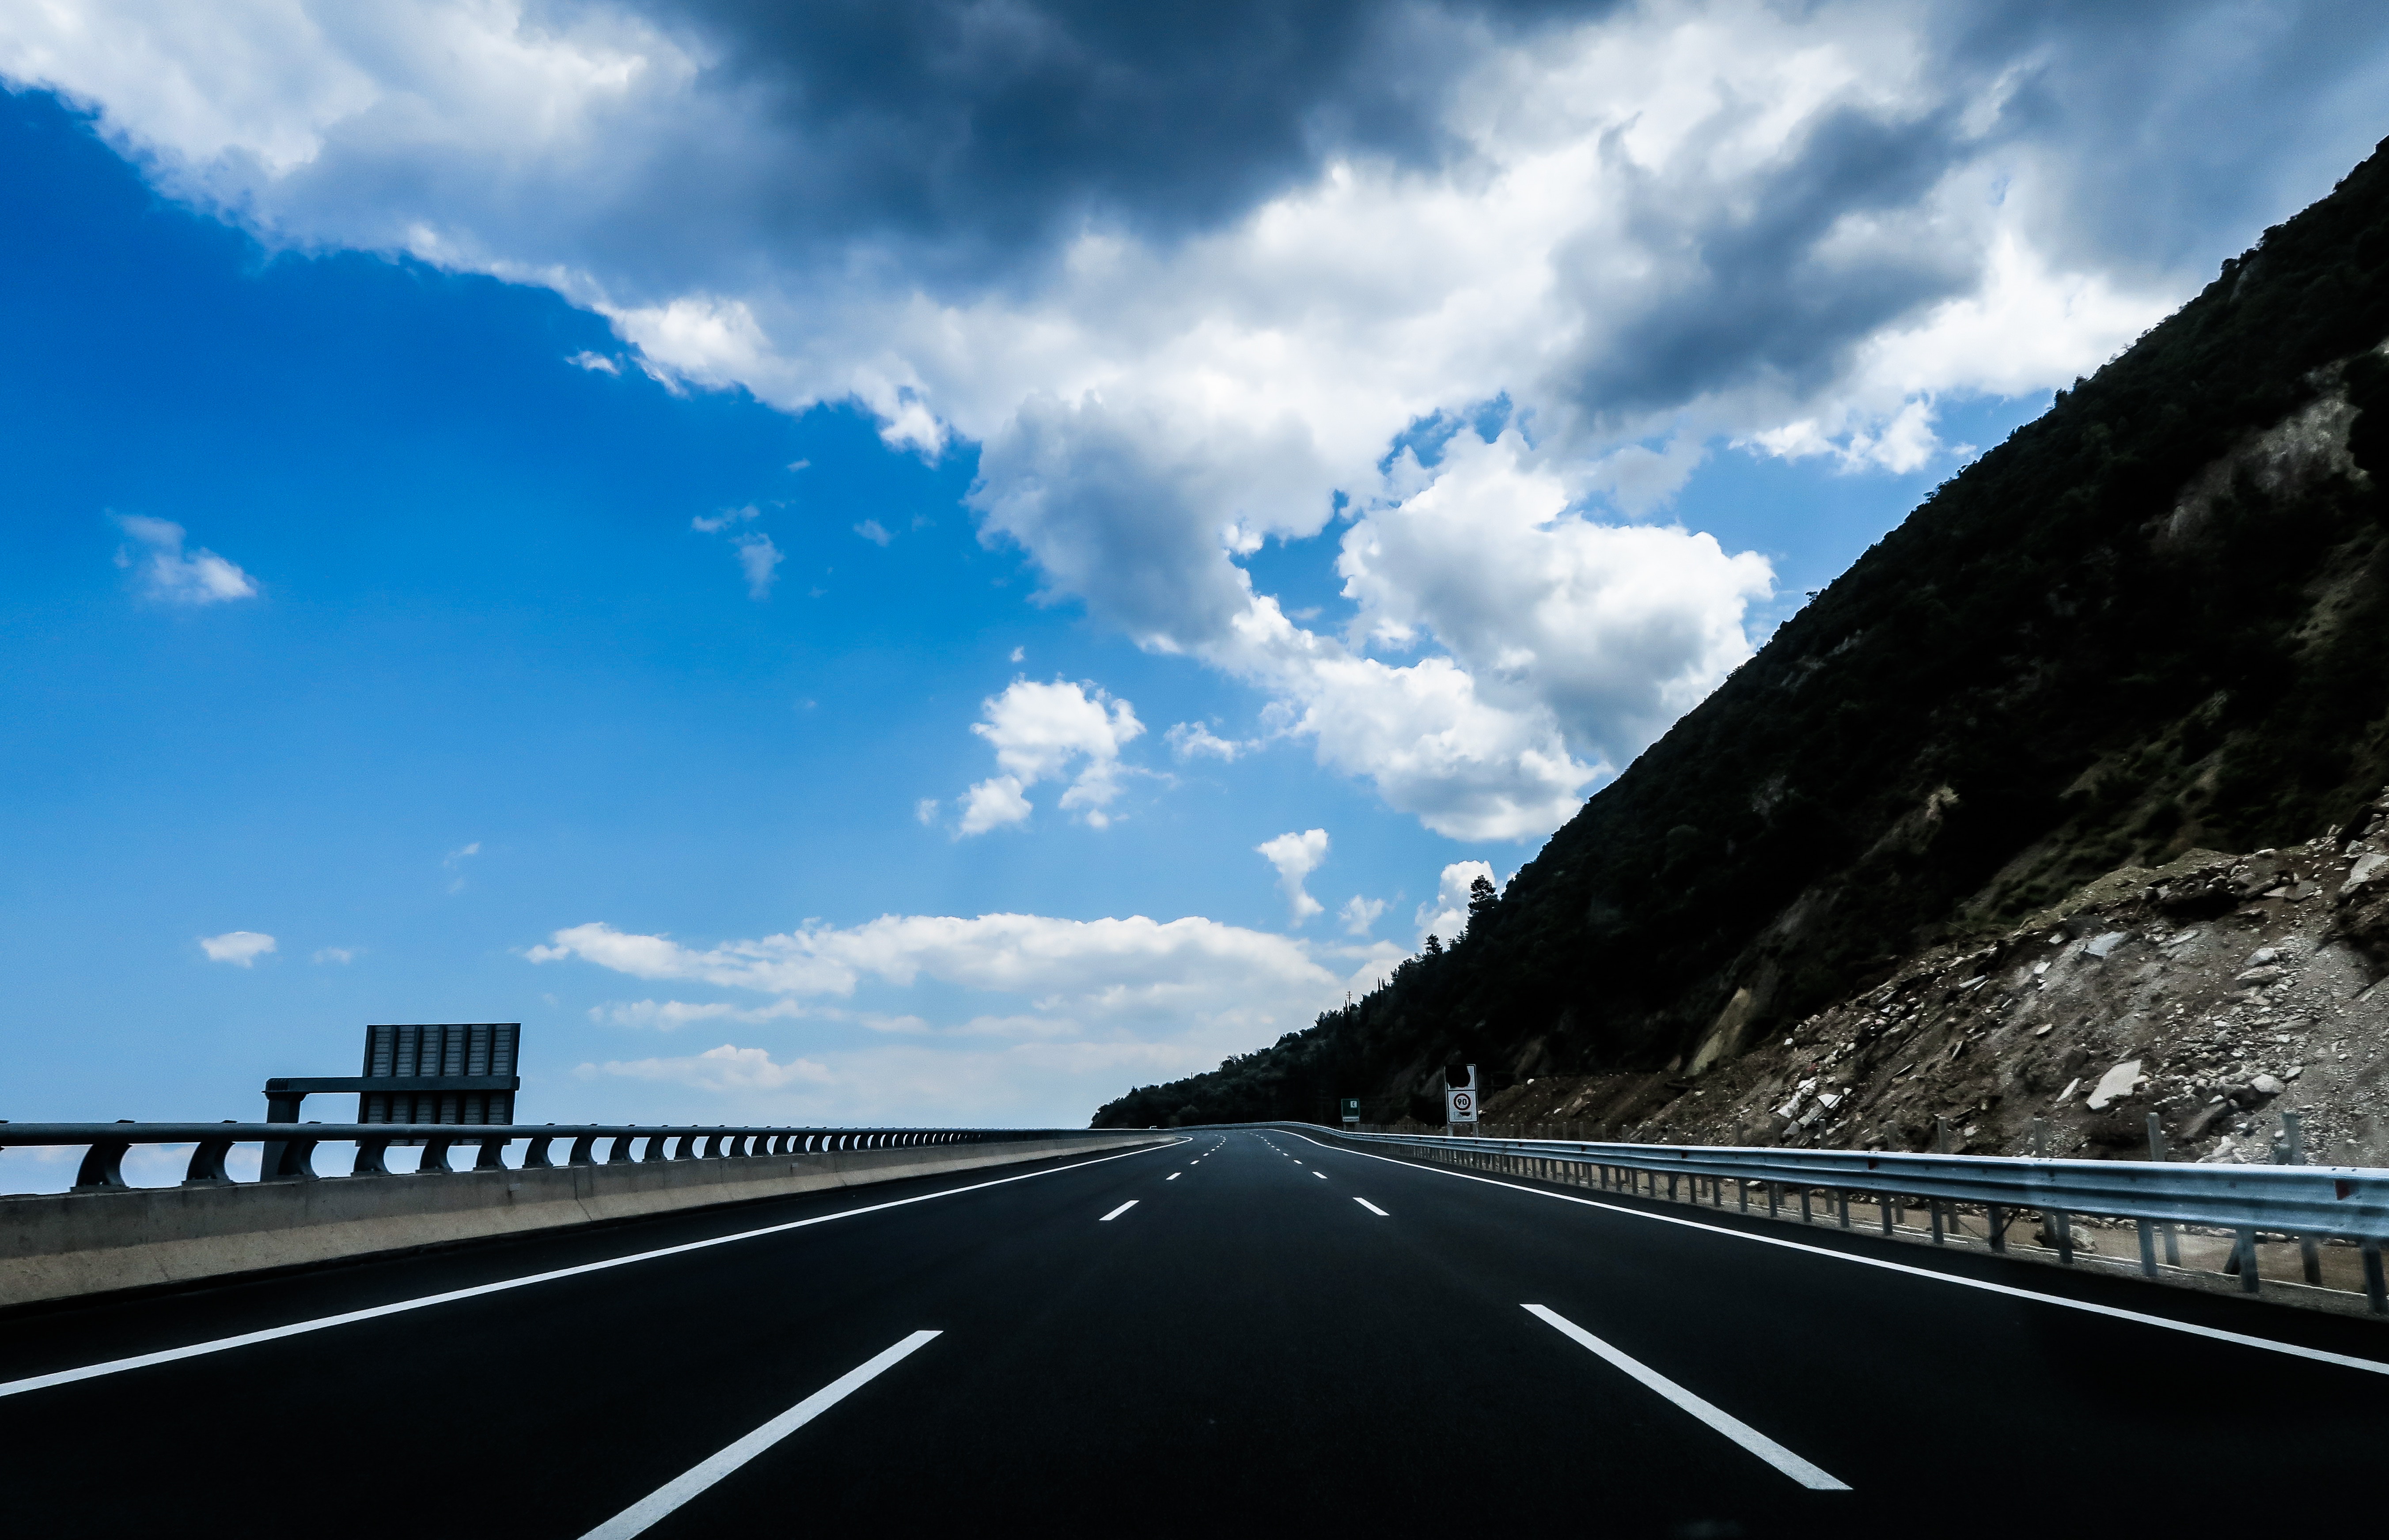 Podróż autostradą - czy na pewno wiemy jak zachowywać się na drodze?